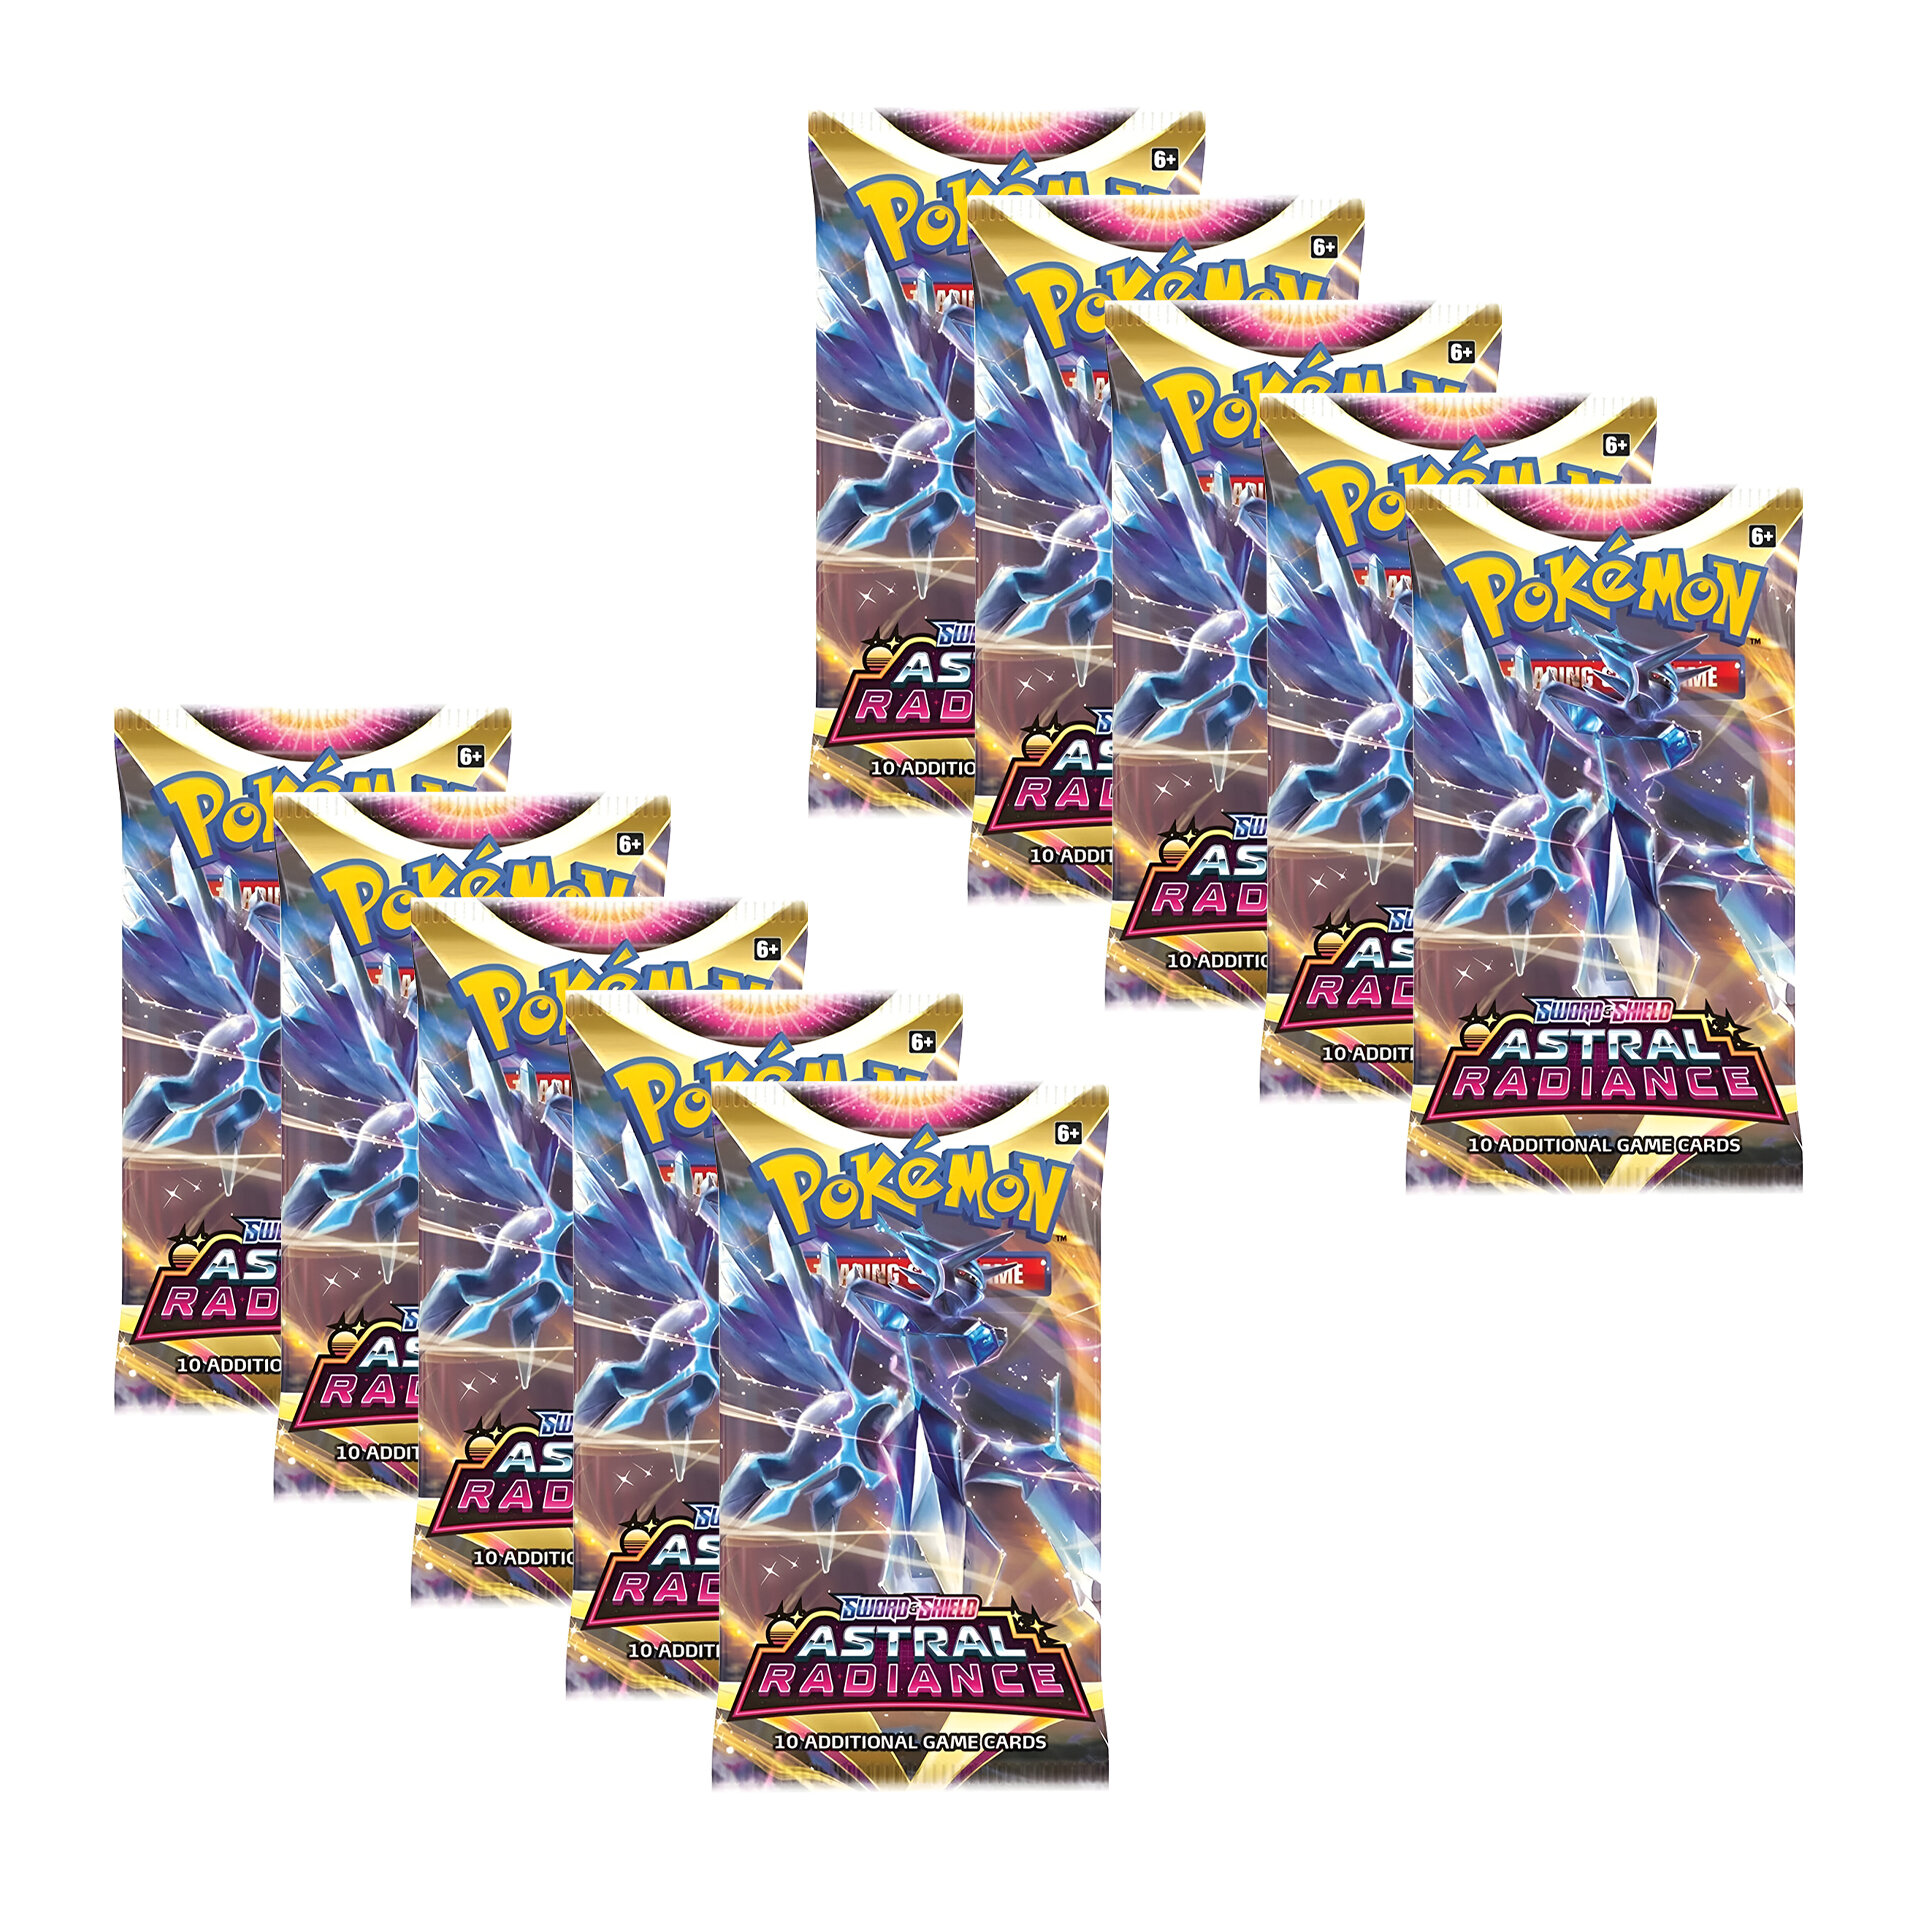 Покемон карты коллекционные: 10 бустеров Pokemon издания Astral Radiance, на английском